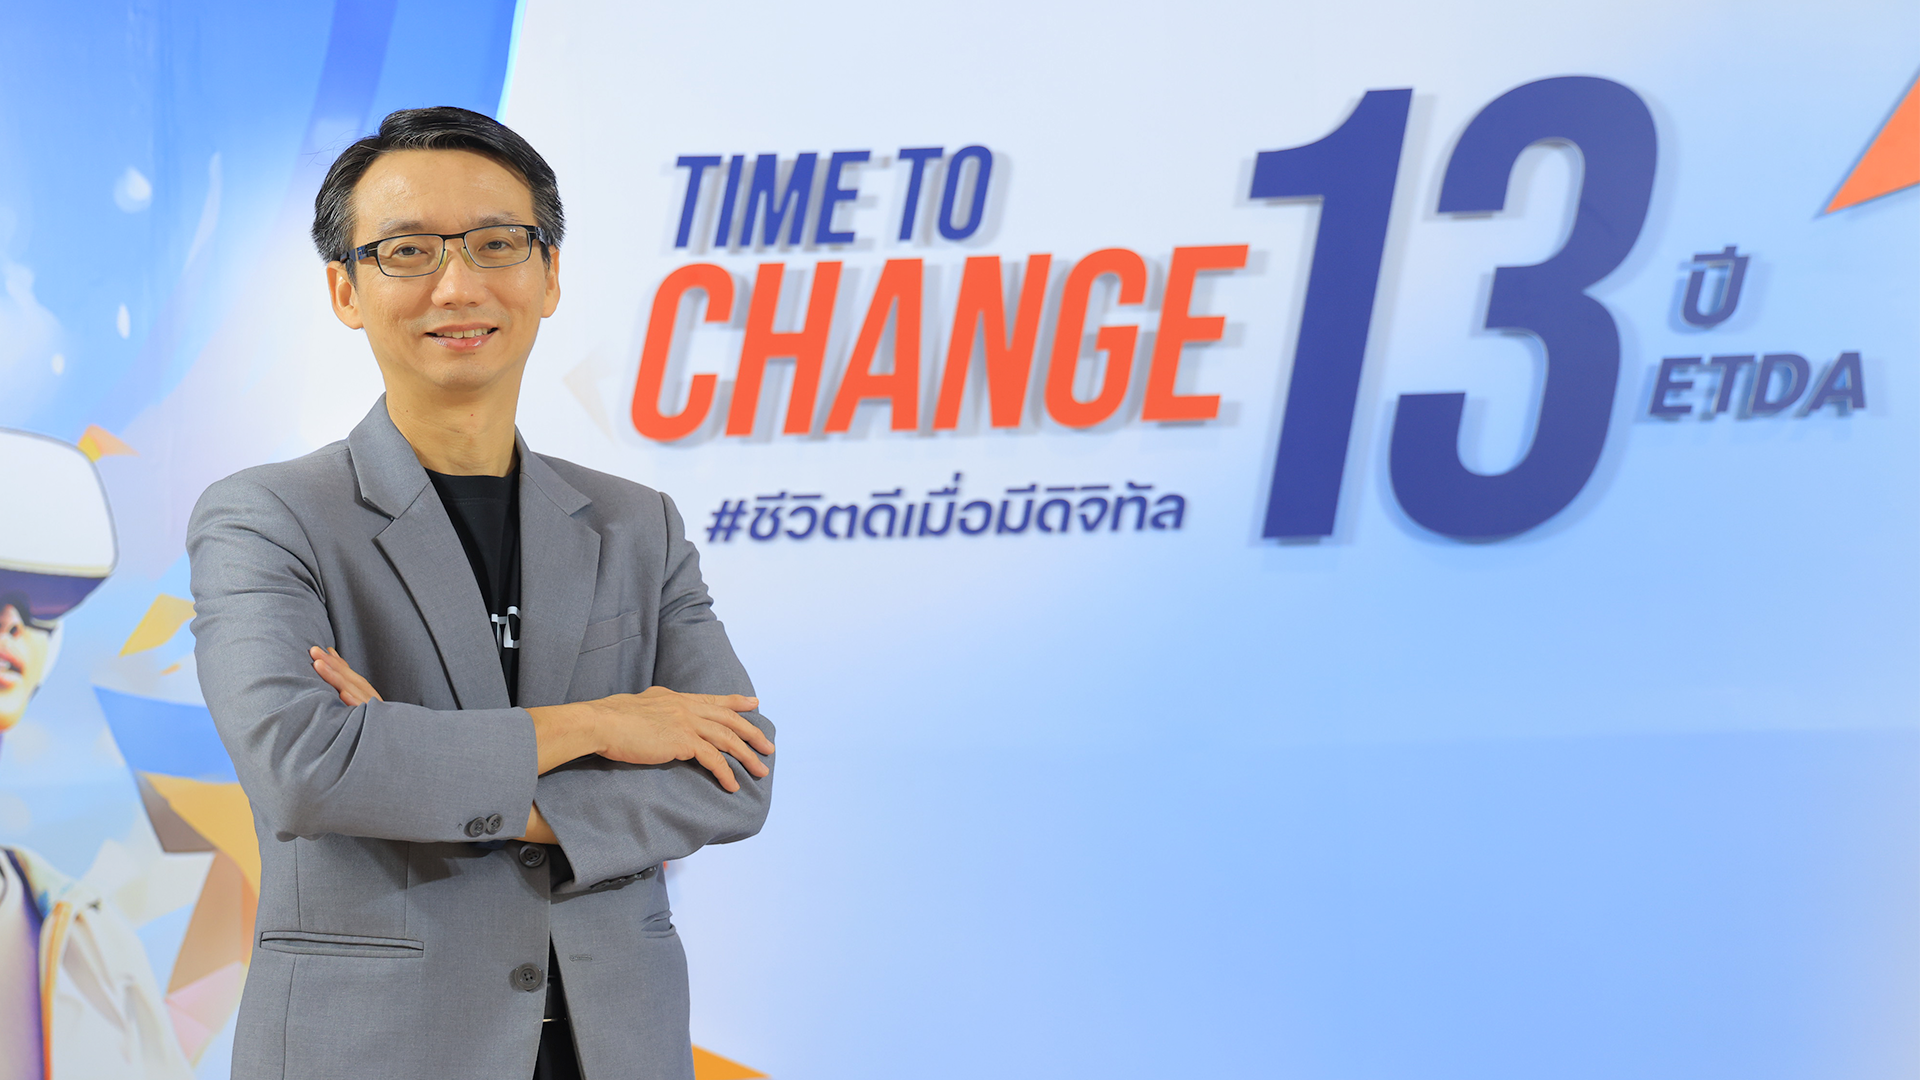  ETDA โชว์ผลงานรอบปี ‘ส่งเสริม-กำกับดูแลธุรกิจบริการดิจิทัล’ เพื่อคนไทย “ชูปี 67 เข้มข้นกับบทบาท Co-Creation Regulator พร้อมติดสปีดไทย พิชิต 30:30” 